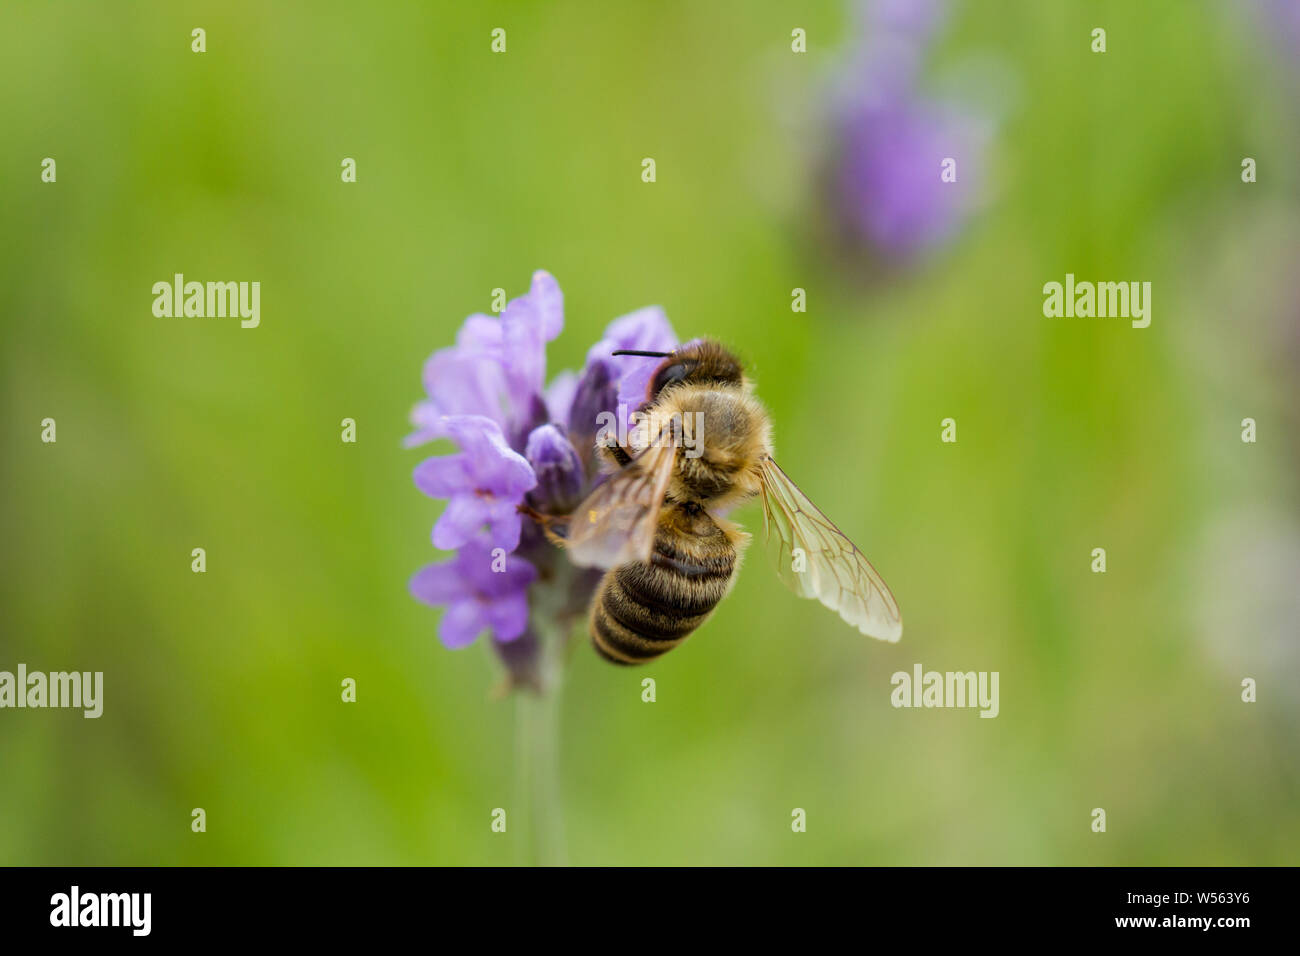 Apis mellifera, Europäische Honigbiene, Westliche Honigbiene Nektar sammeln von lavendelblüten. Großbritannien Stockfoto